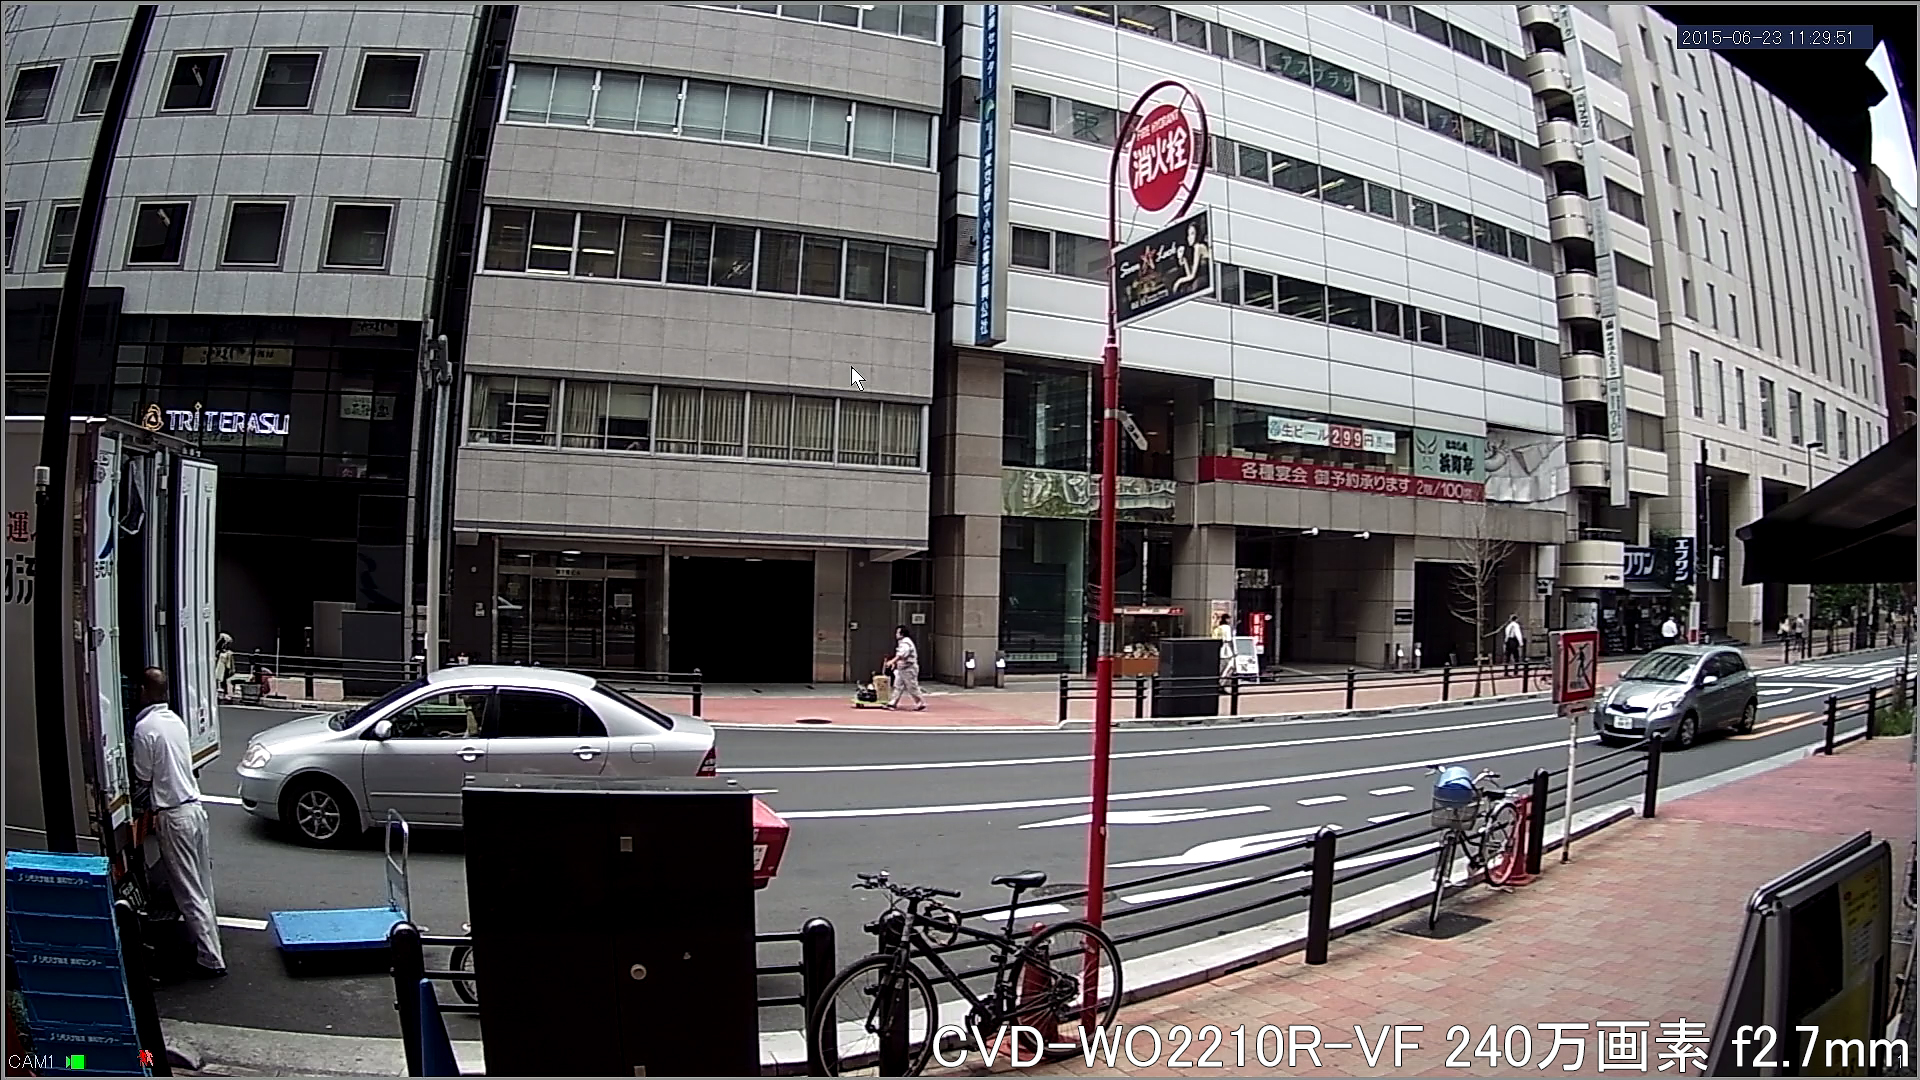 CVD-WO2210R2-VF 事務所外を広角撮影(屋外)